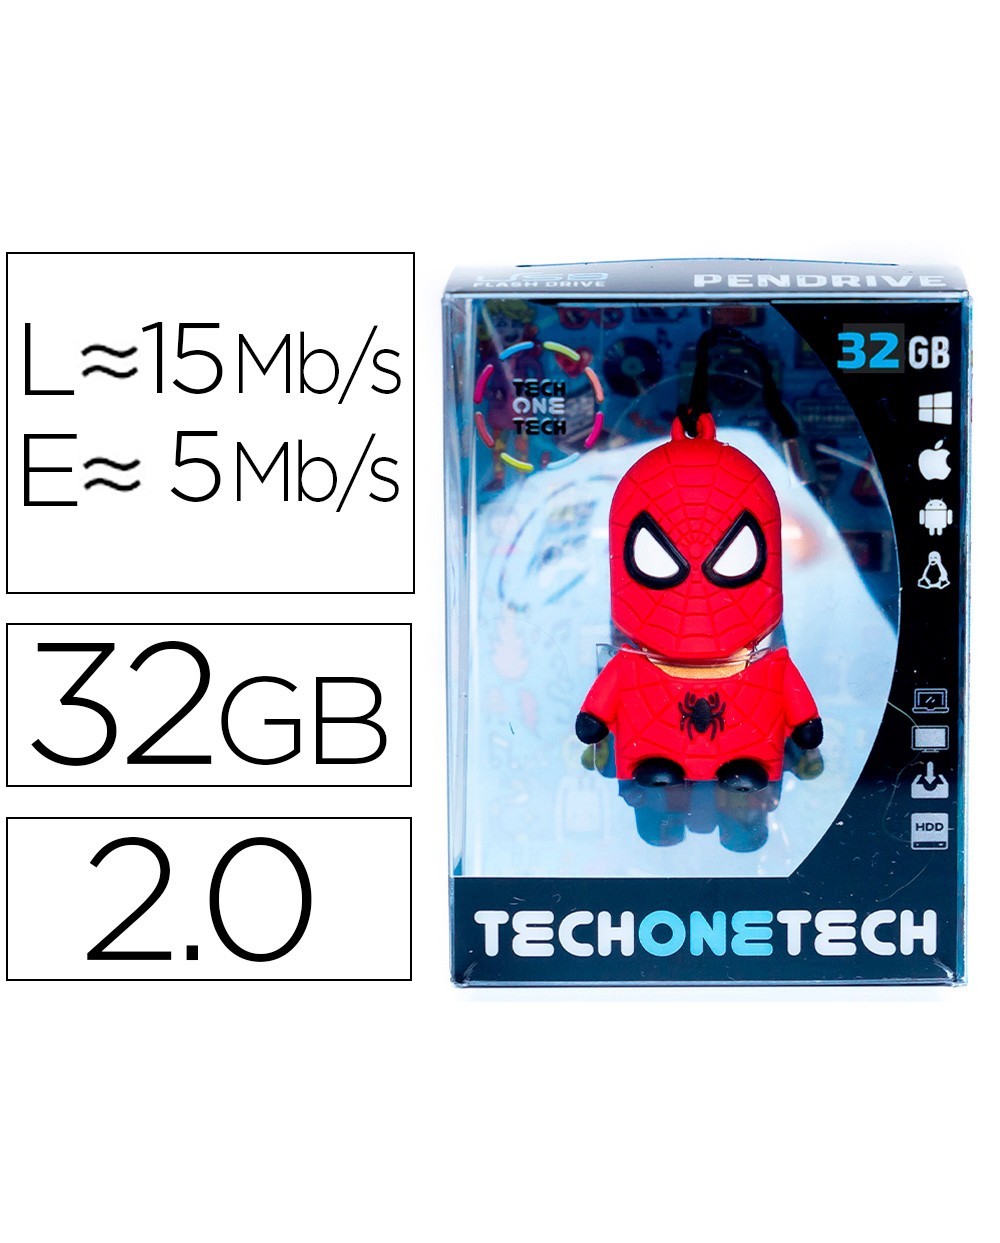 Memoria usb tech on tech super spider 32 gb